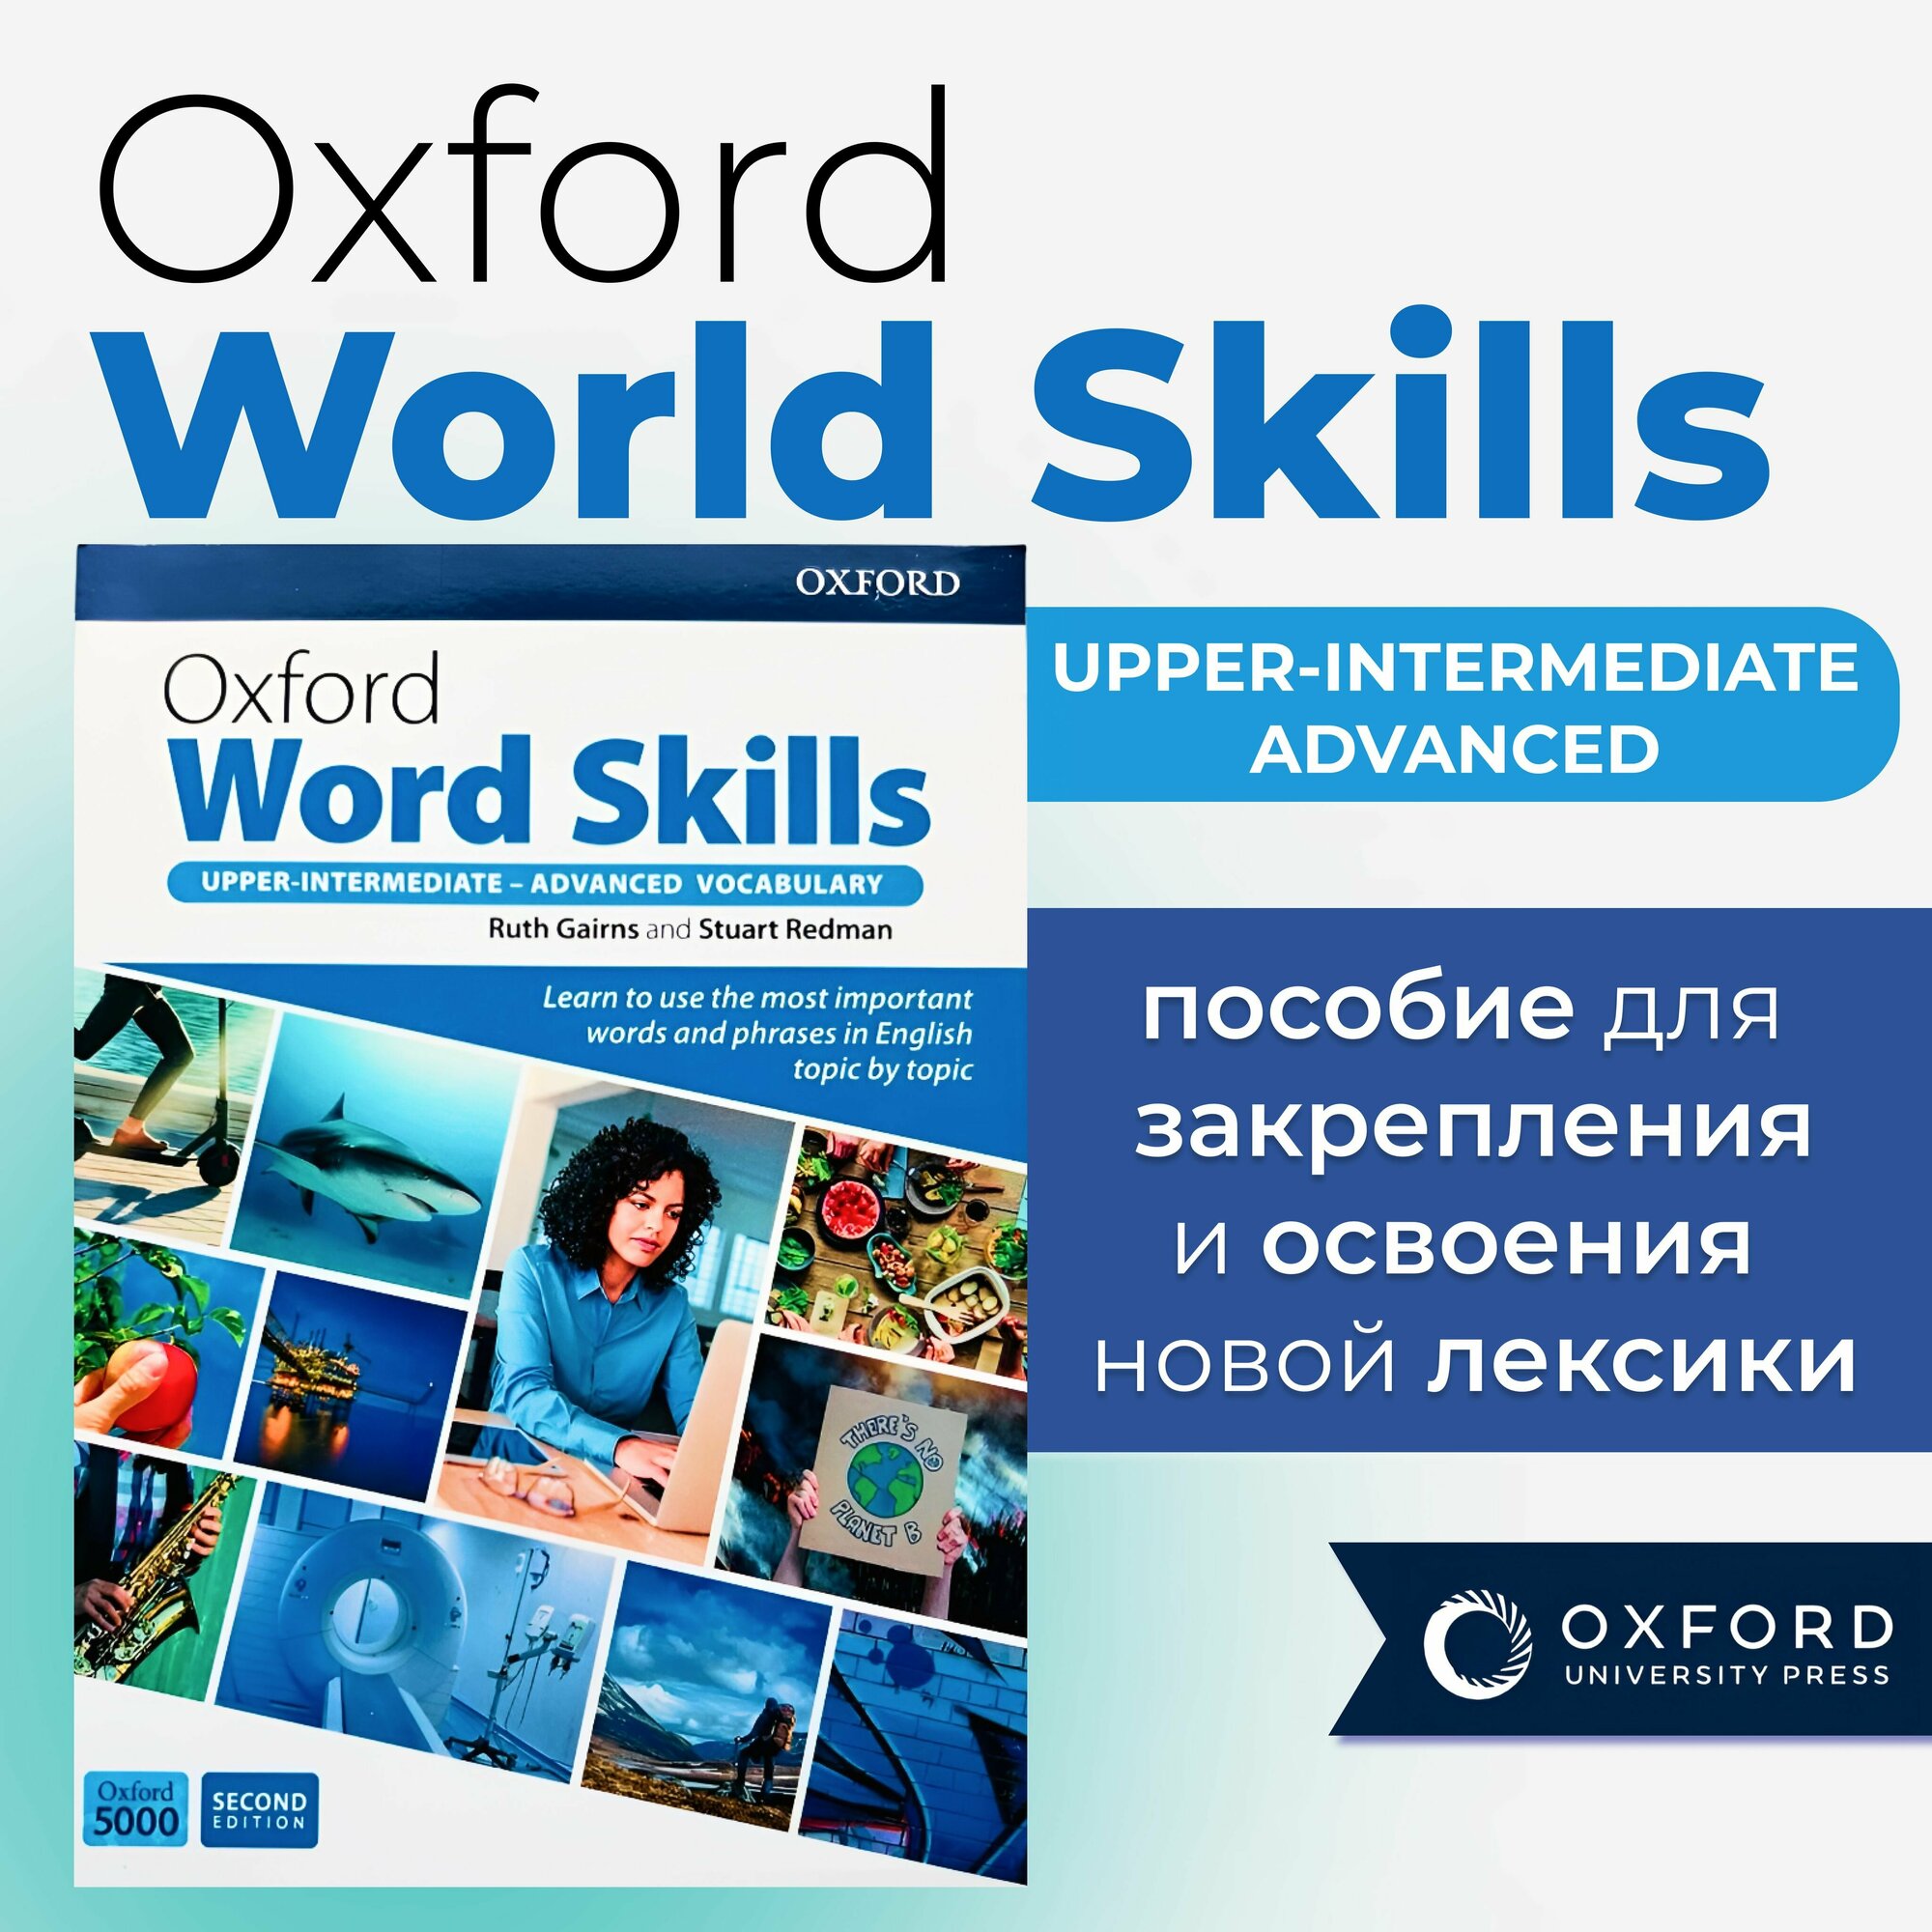 Oxford Word Skills upper-intermediate - advanced 2nd edition полноразмерная версия